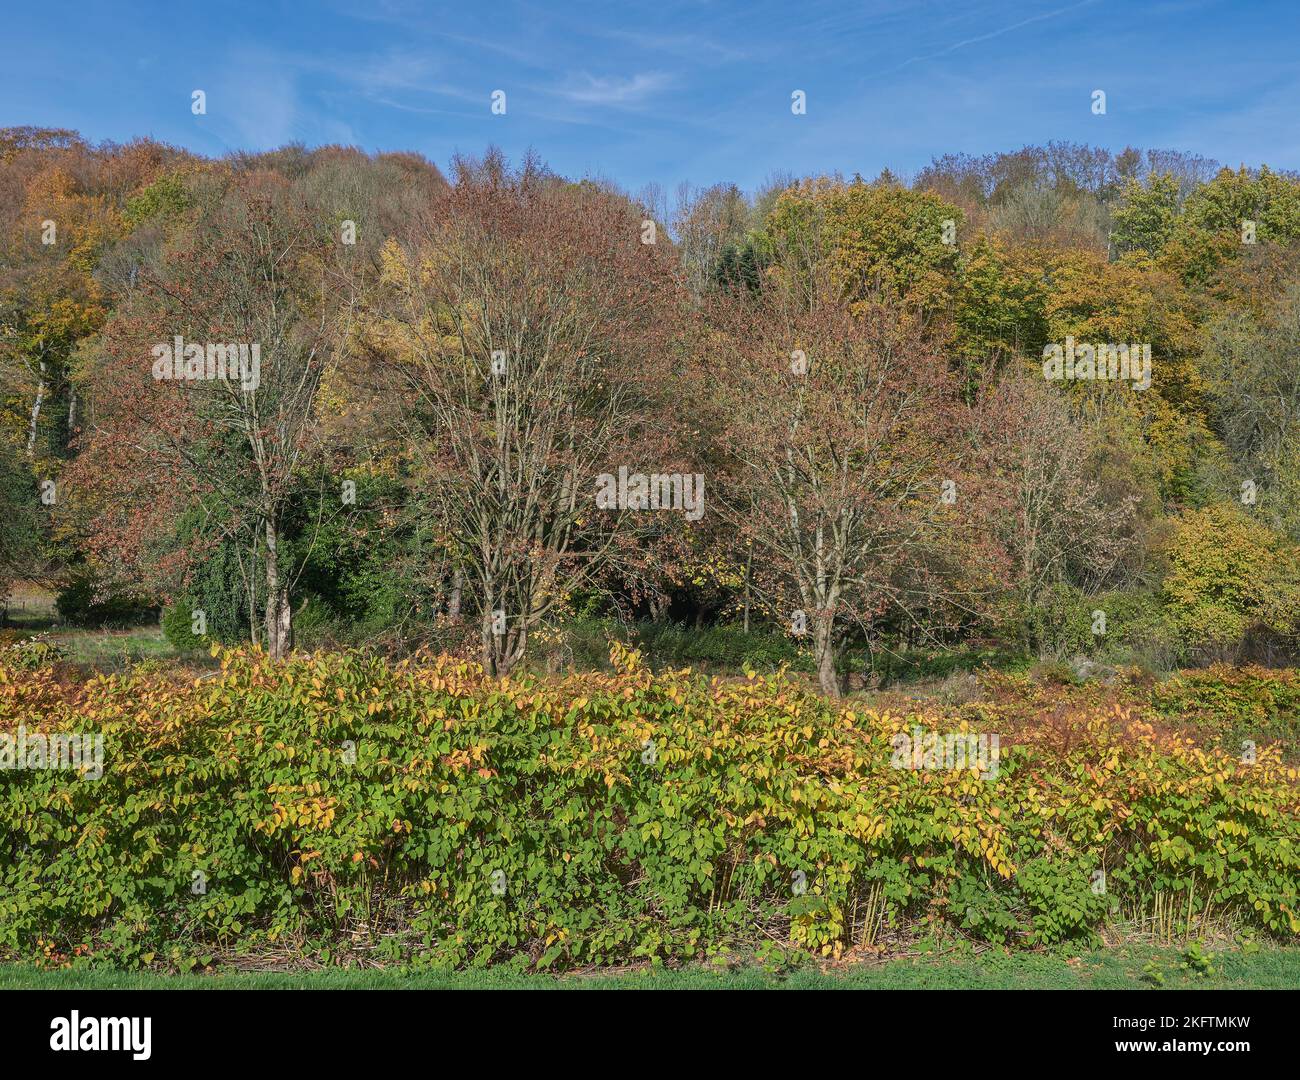 nouaded japonais (Fallopia japonica), en automne à la rivière Wupper, Bergisches Land, Allemagne Banque D'Images